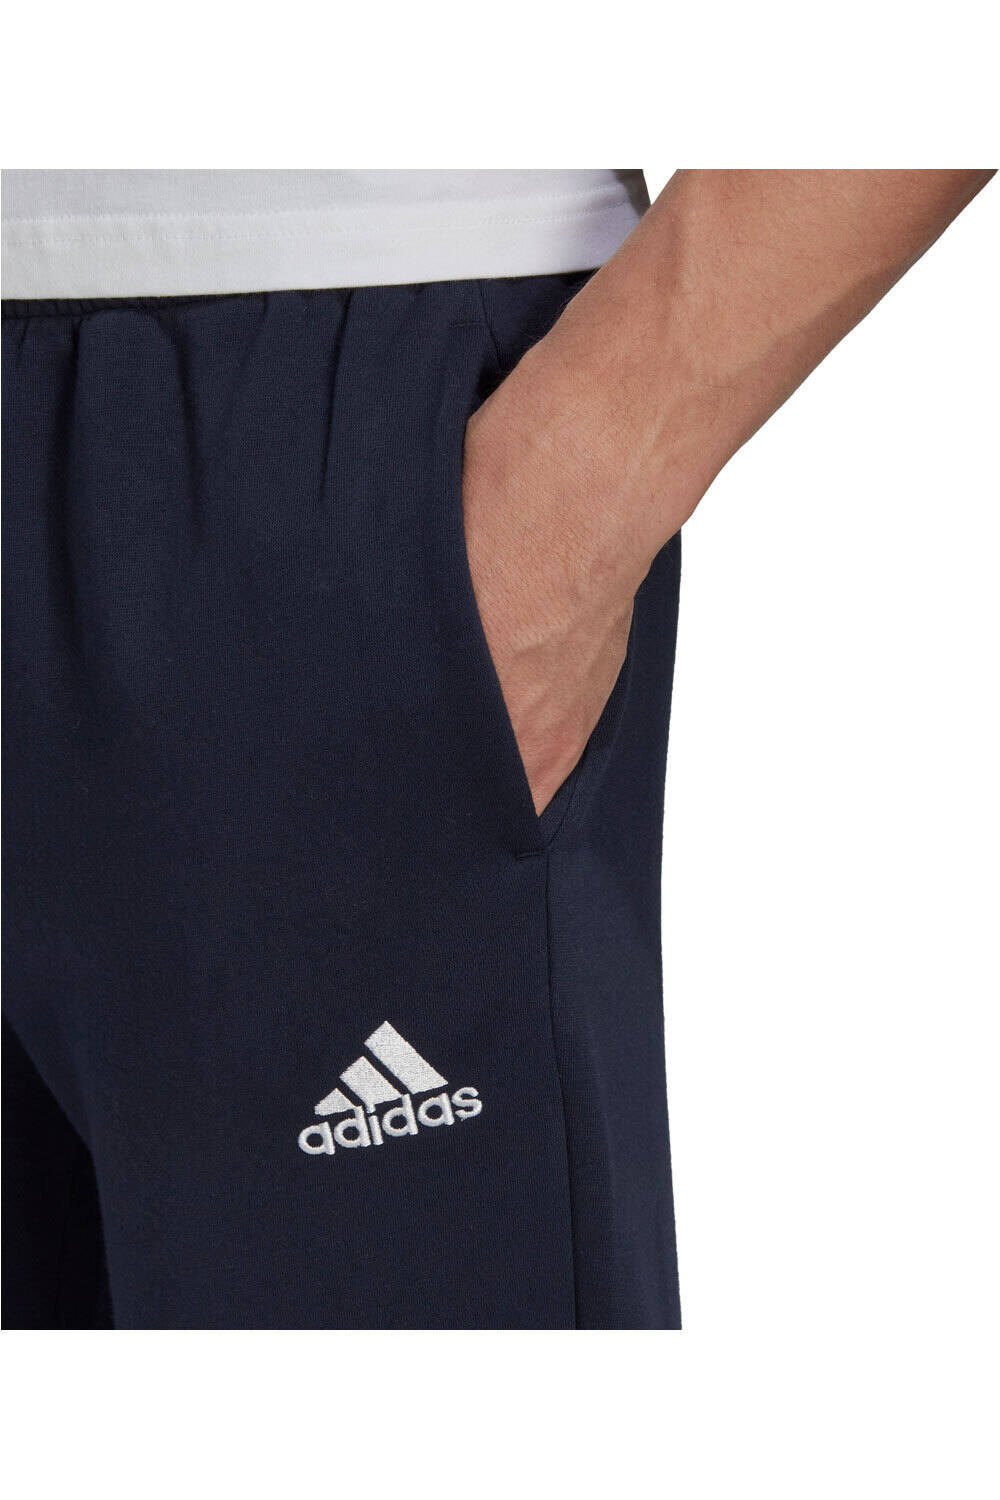 adidas pantalón hombre Essentials Regular Tapered Fleece vista detalle